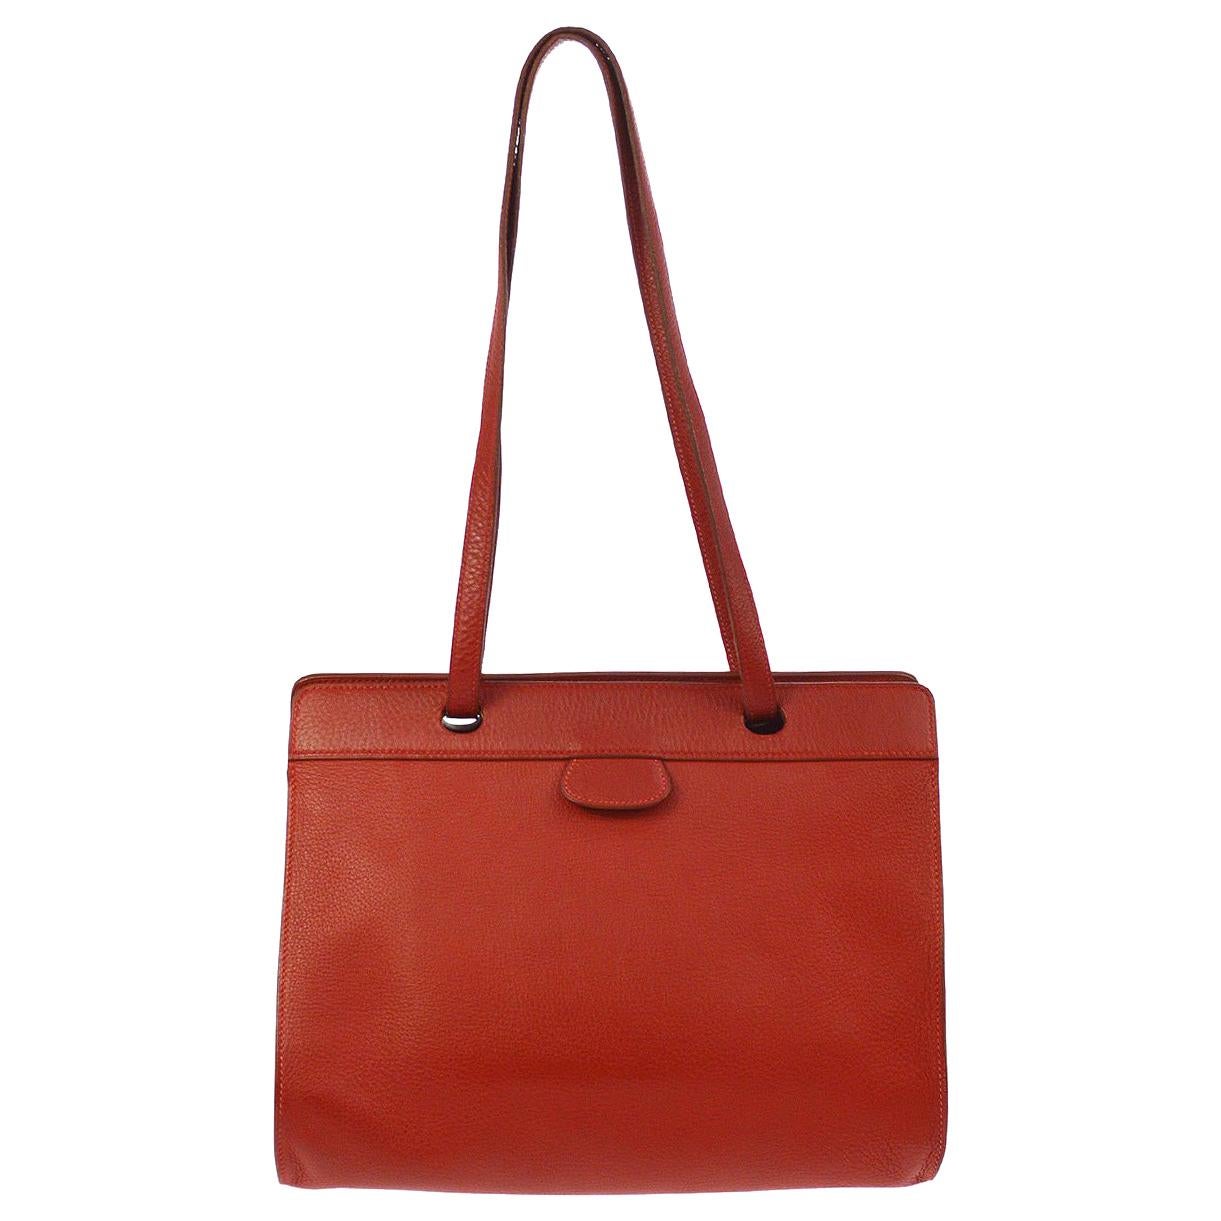 Hermes Red Leather Top Handle Satchel Carryall Travel Shoulder Tote Bag